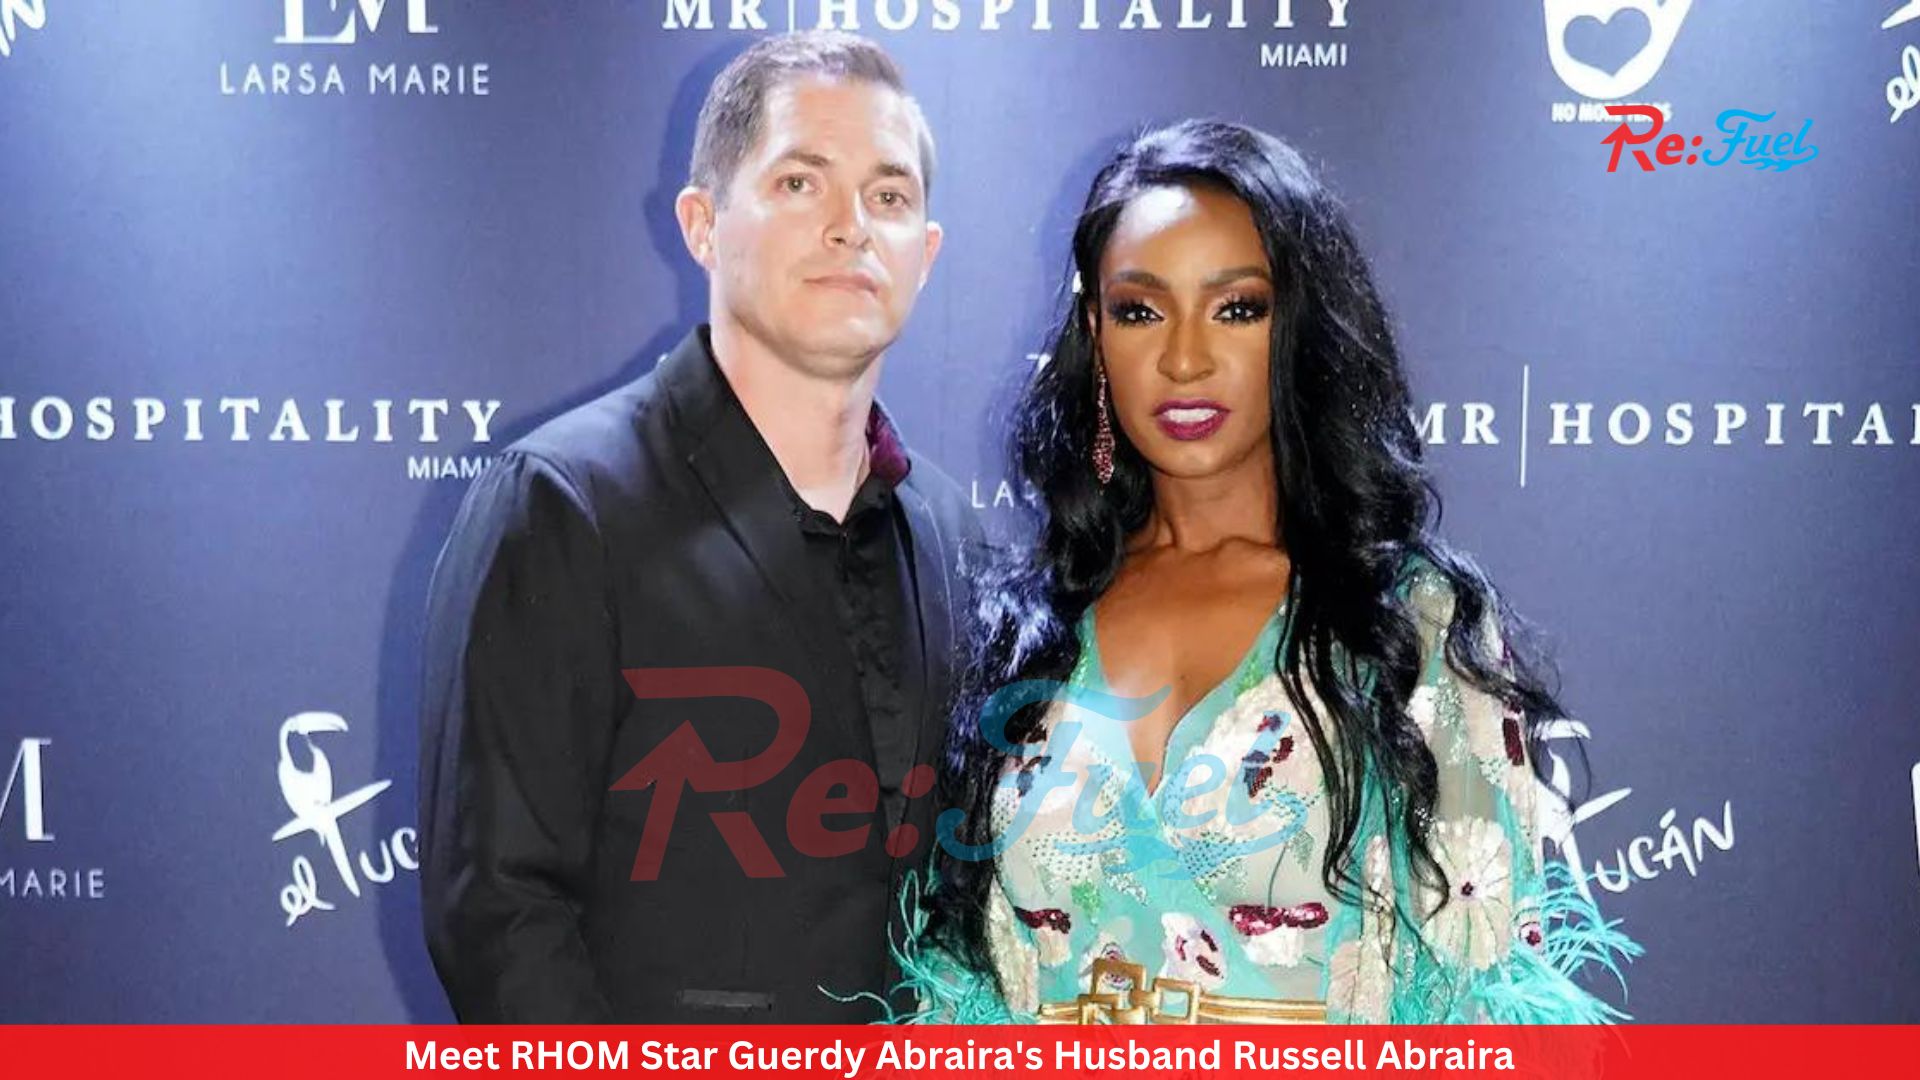 Meet RHOM Star Guerdy Abraira's Husband Russell Abraira